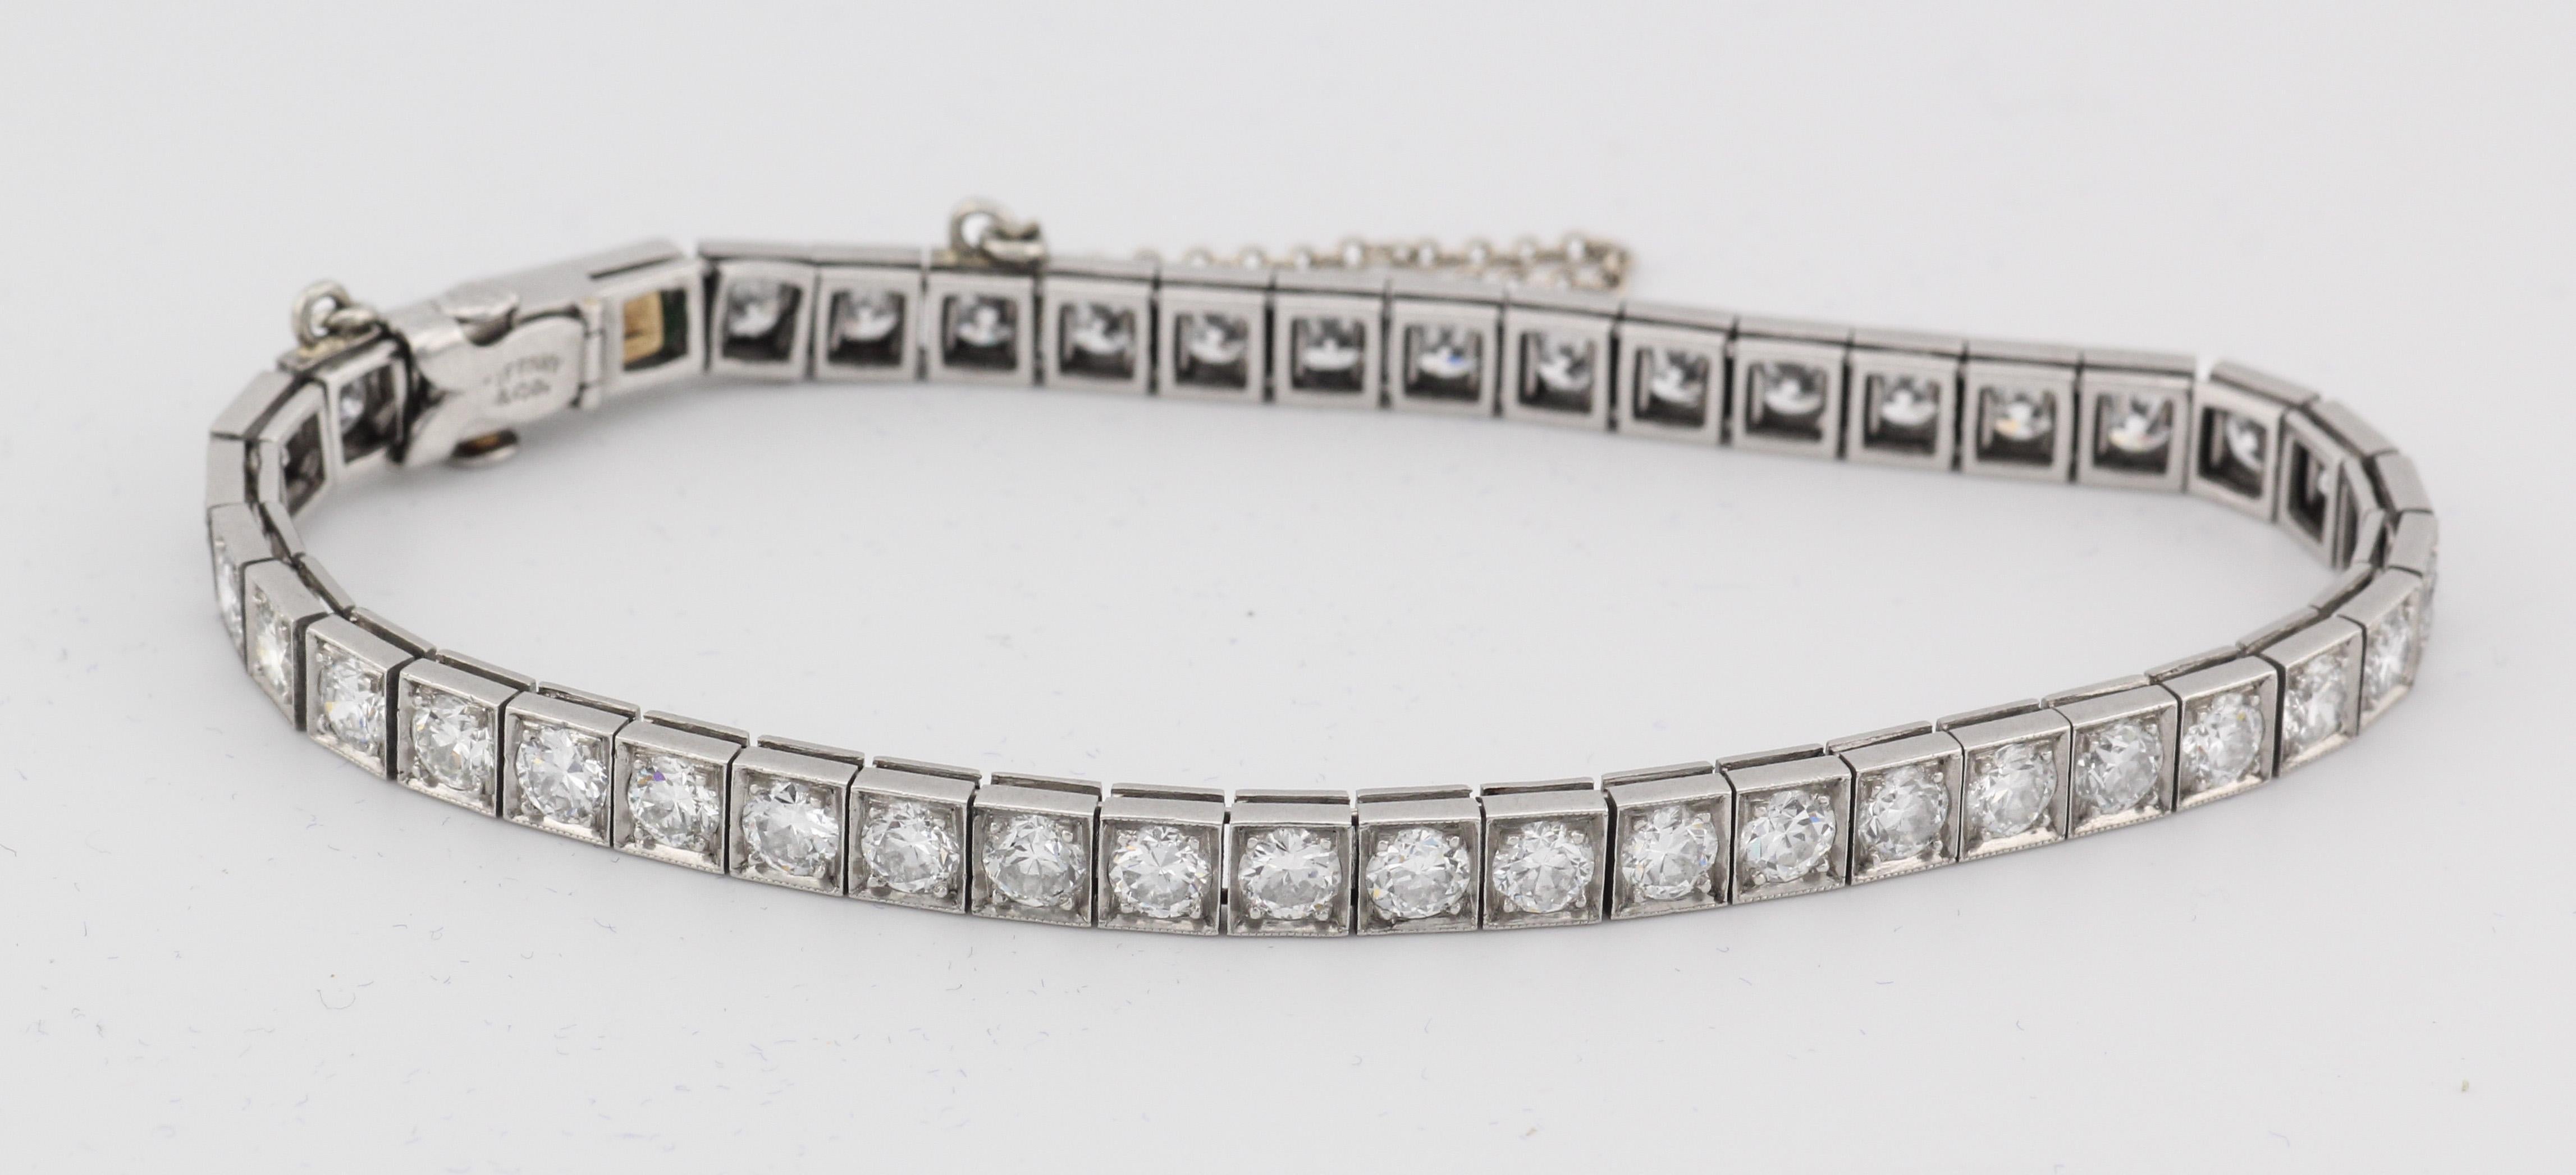 Treten Sie ein in die Welt zeitloser Raffinesse und luxuriöser Eleganz mit der Tiffany & Co. Art Deco 5 CTW Diamant Smaragd Platin Linie Tennisarmband. Dieses exquisite Stück wurde mit viel Liebe zum Detail gefertigt und ist ein Beweis für den Luxus